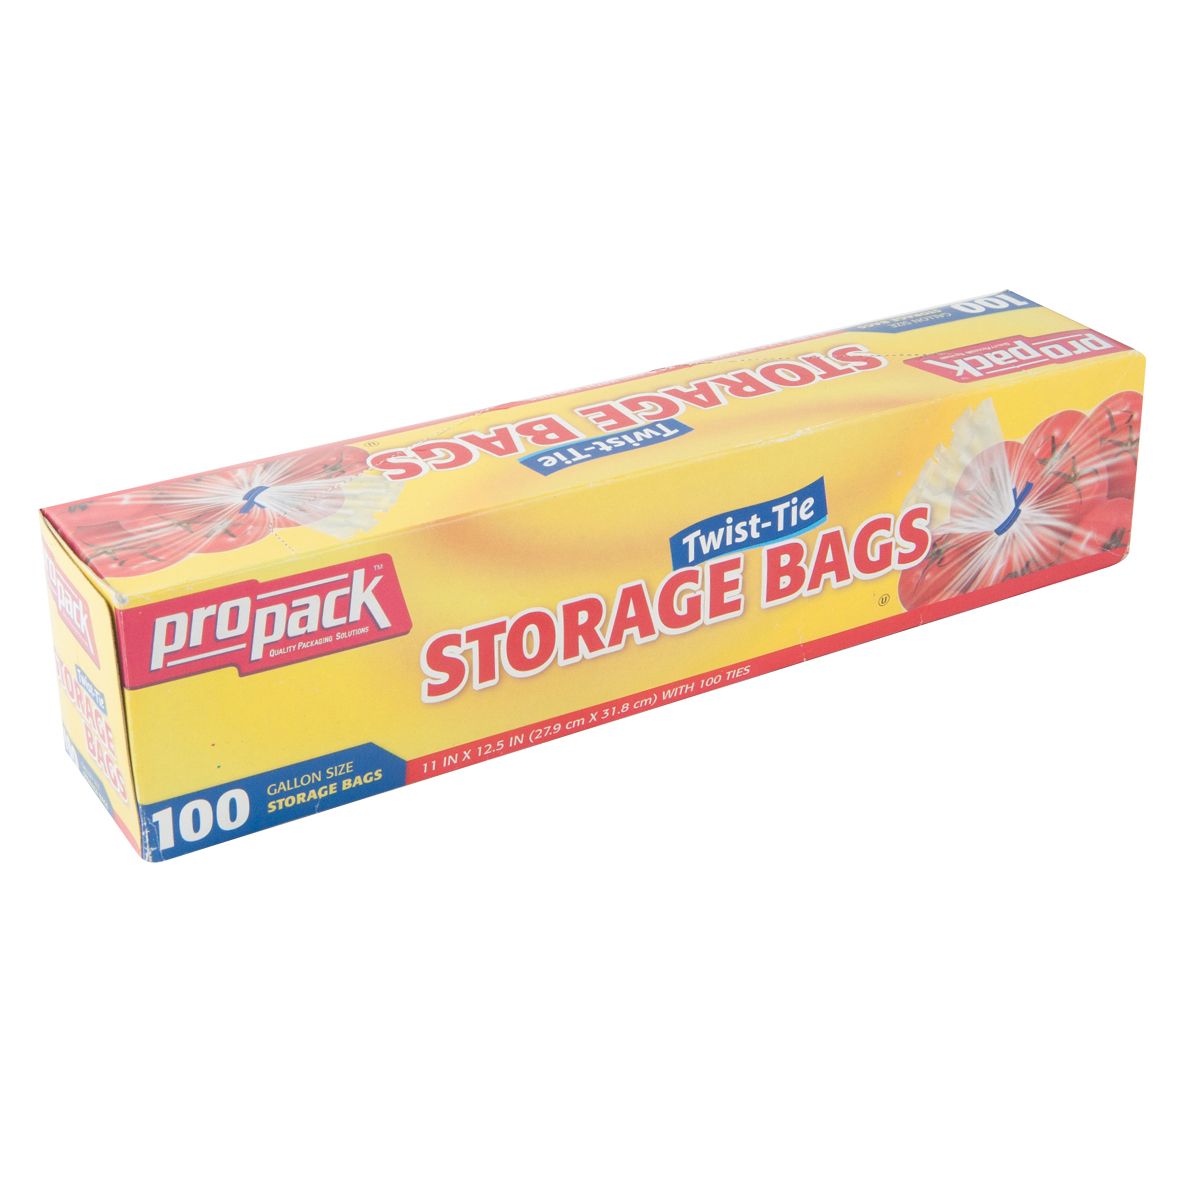 Twist Tie Storage Bags - Best Yet Brand